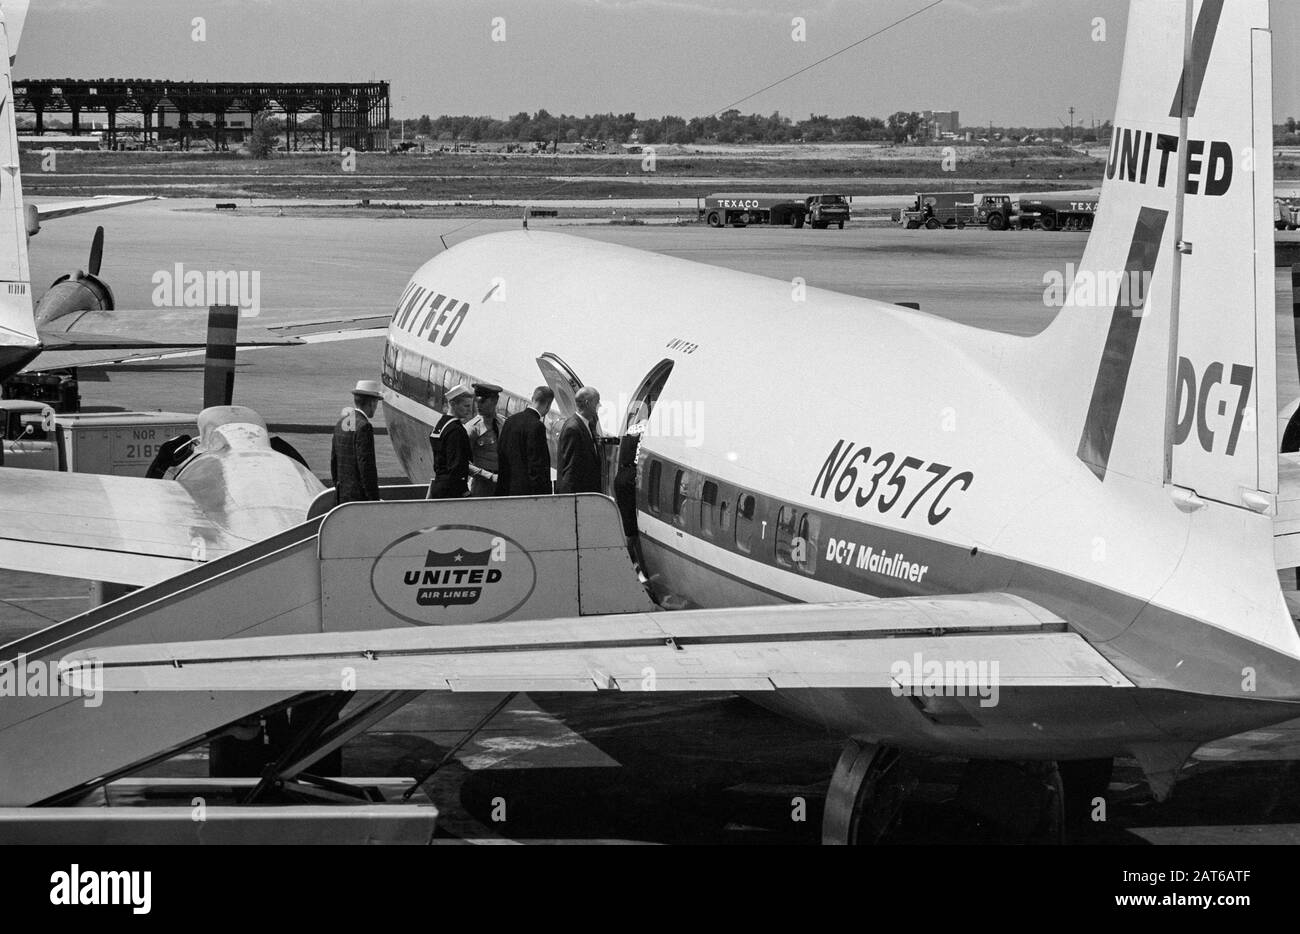 Una fotografia vintage in bianco e nero scattata nel luglio 1961 all'Aeroporto o'Hare di Chicago negli Stati Uniti. I passeggeri stanno imbarcando su una United Airlines Douglas DC-7, N6357C, utilizzando i gradini mobili. Foto Stock